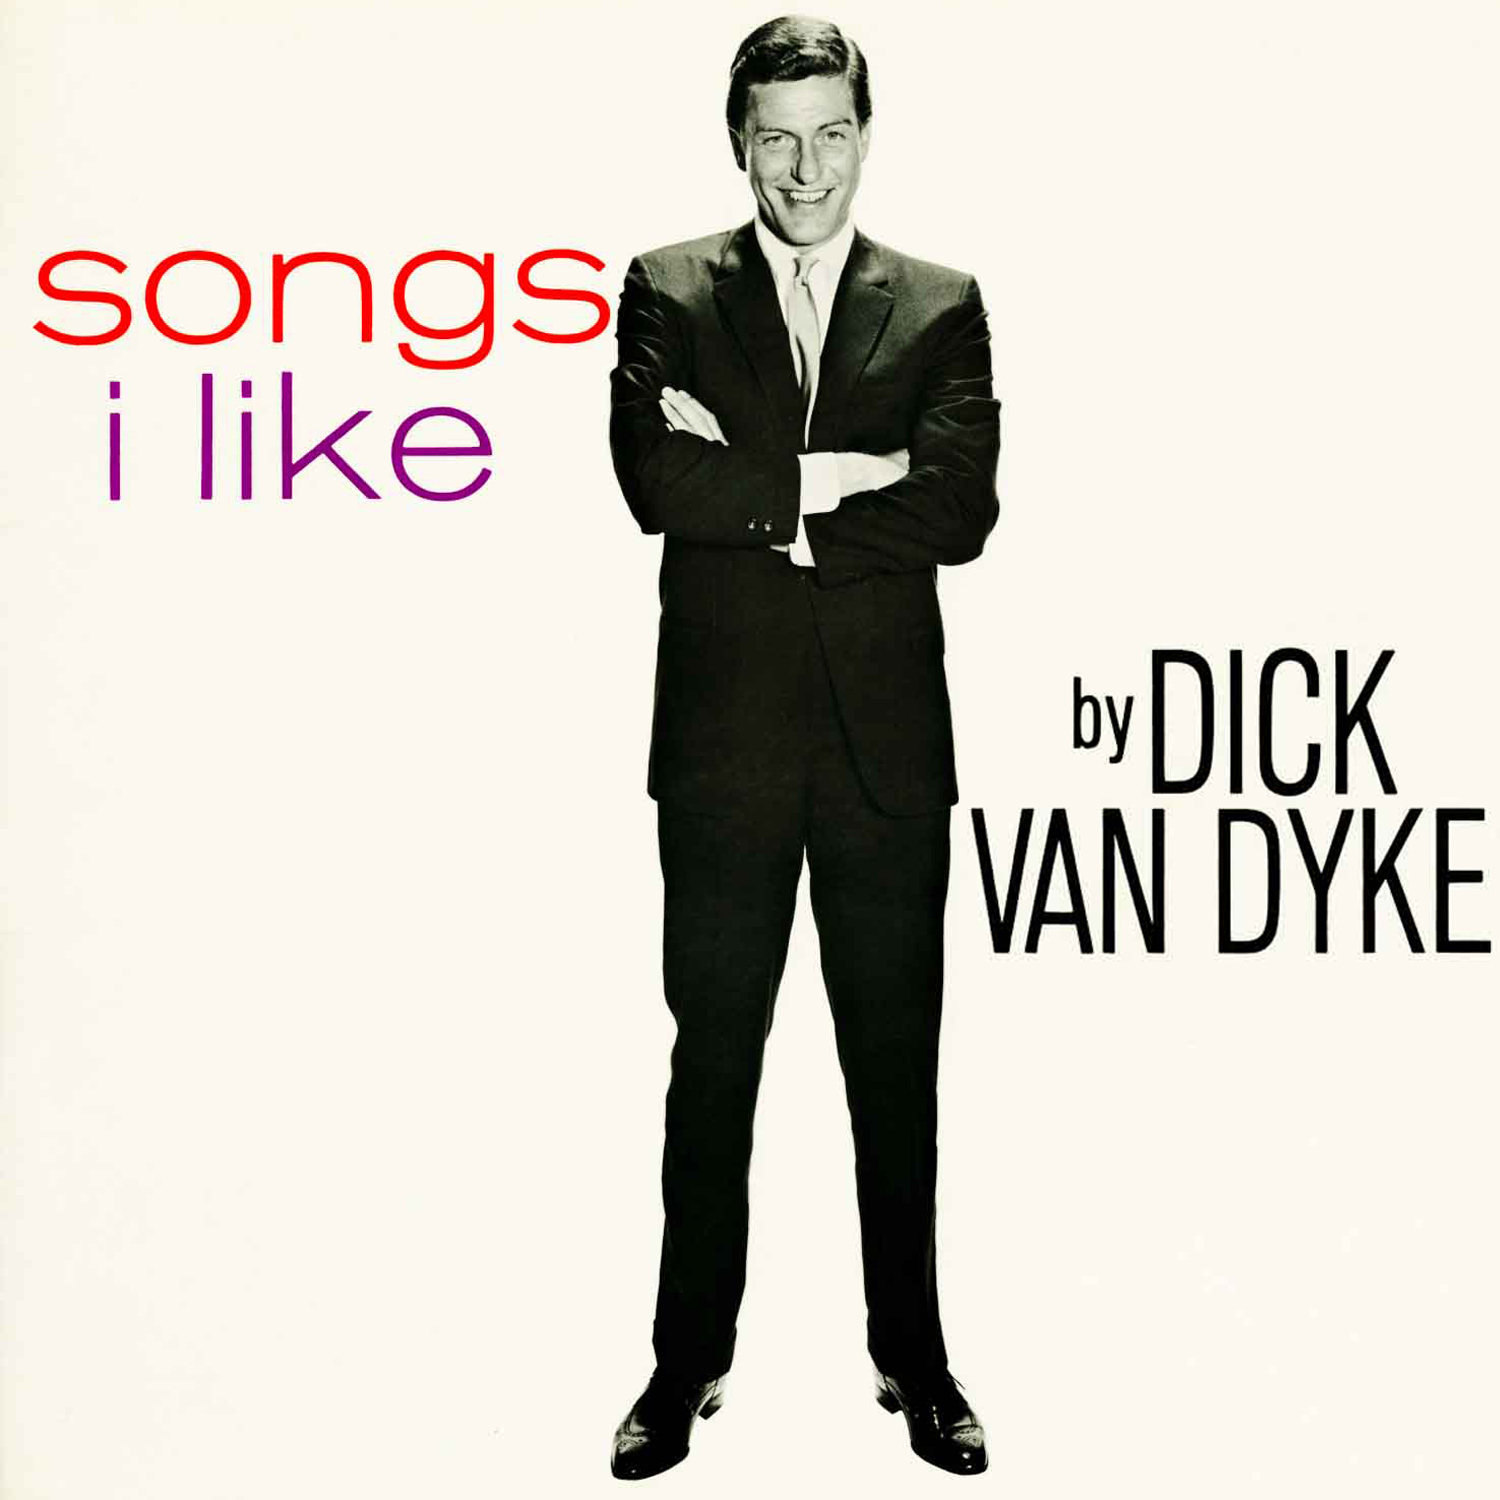 Dick van dyke as a baby